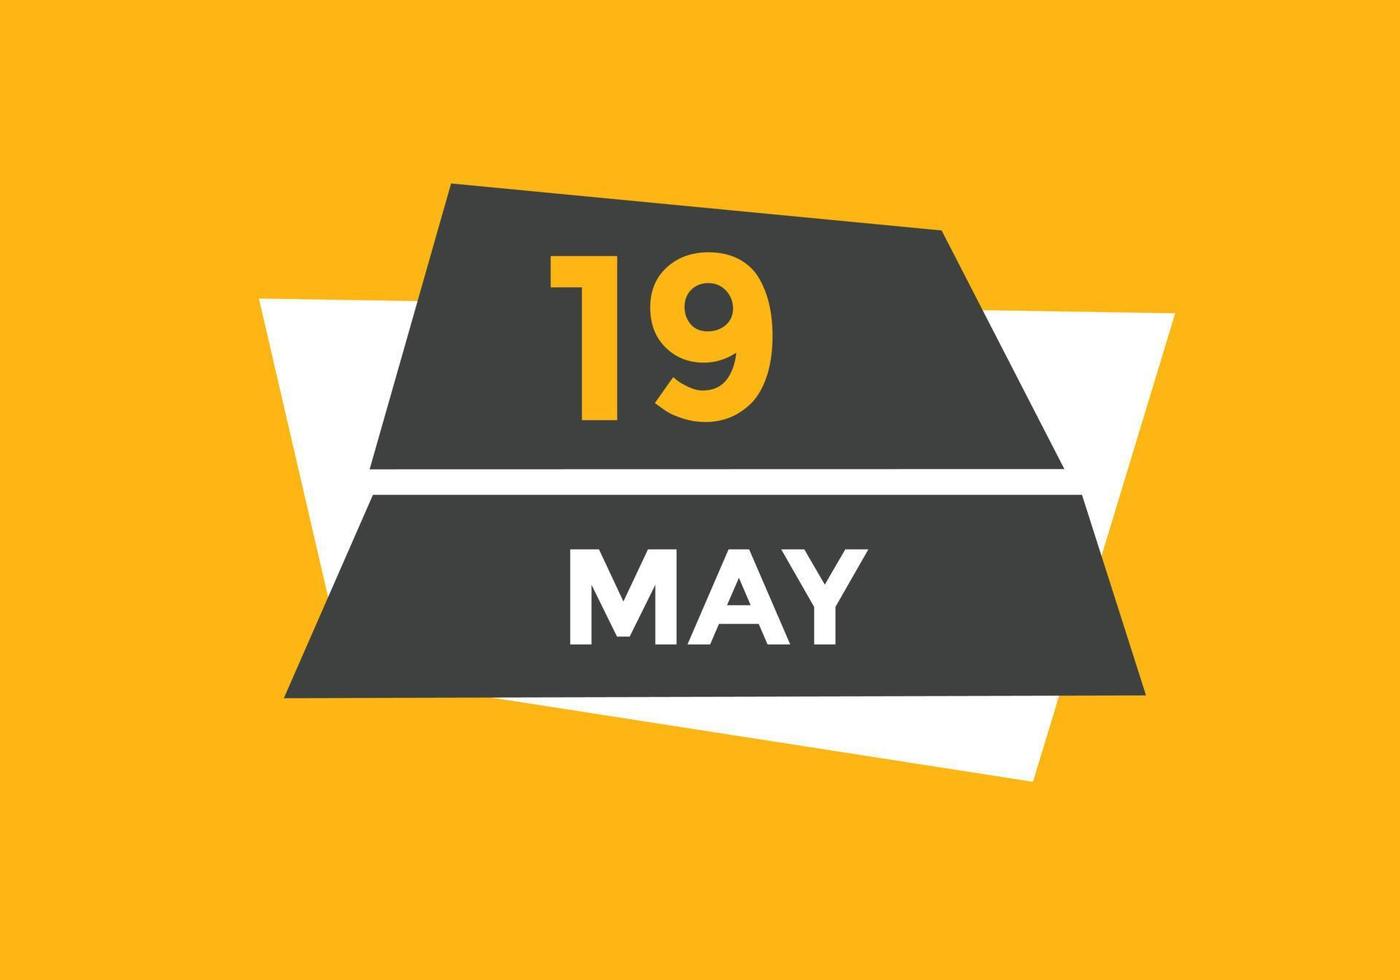 may 19 calendar reminder. 19th may daily calendar icon template. Calendar 19th may icon Design template. Vector illustration